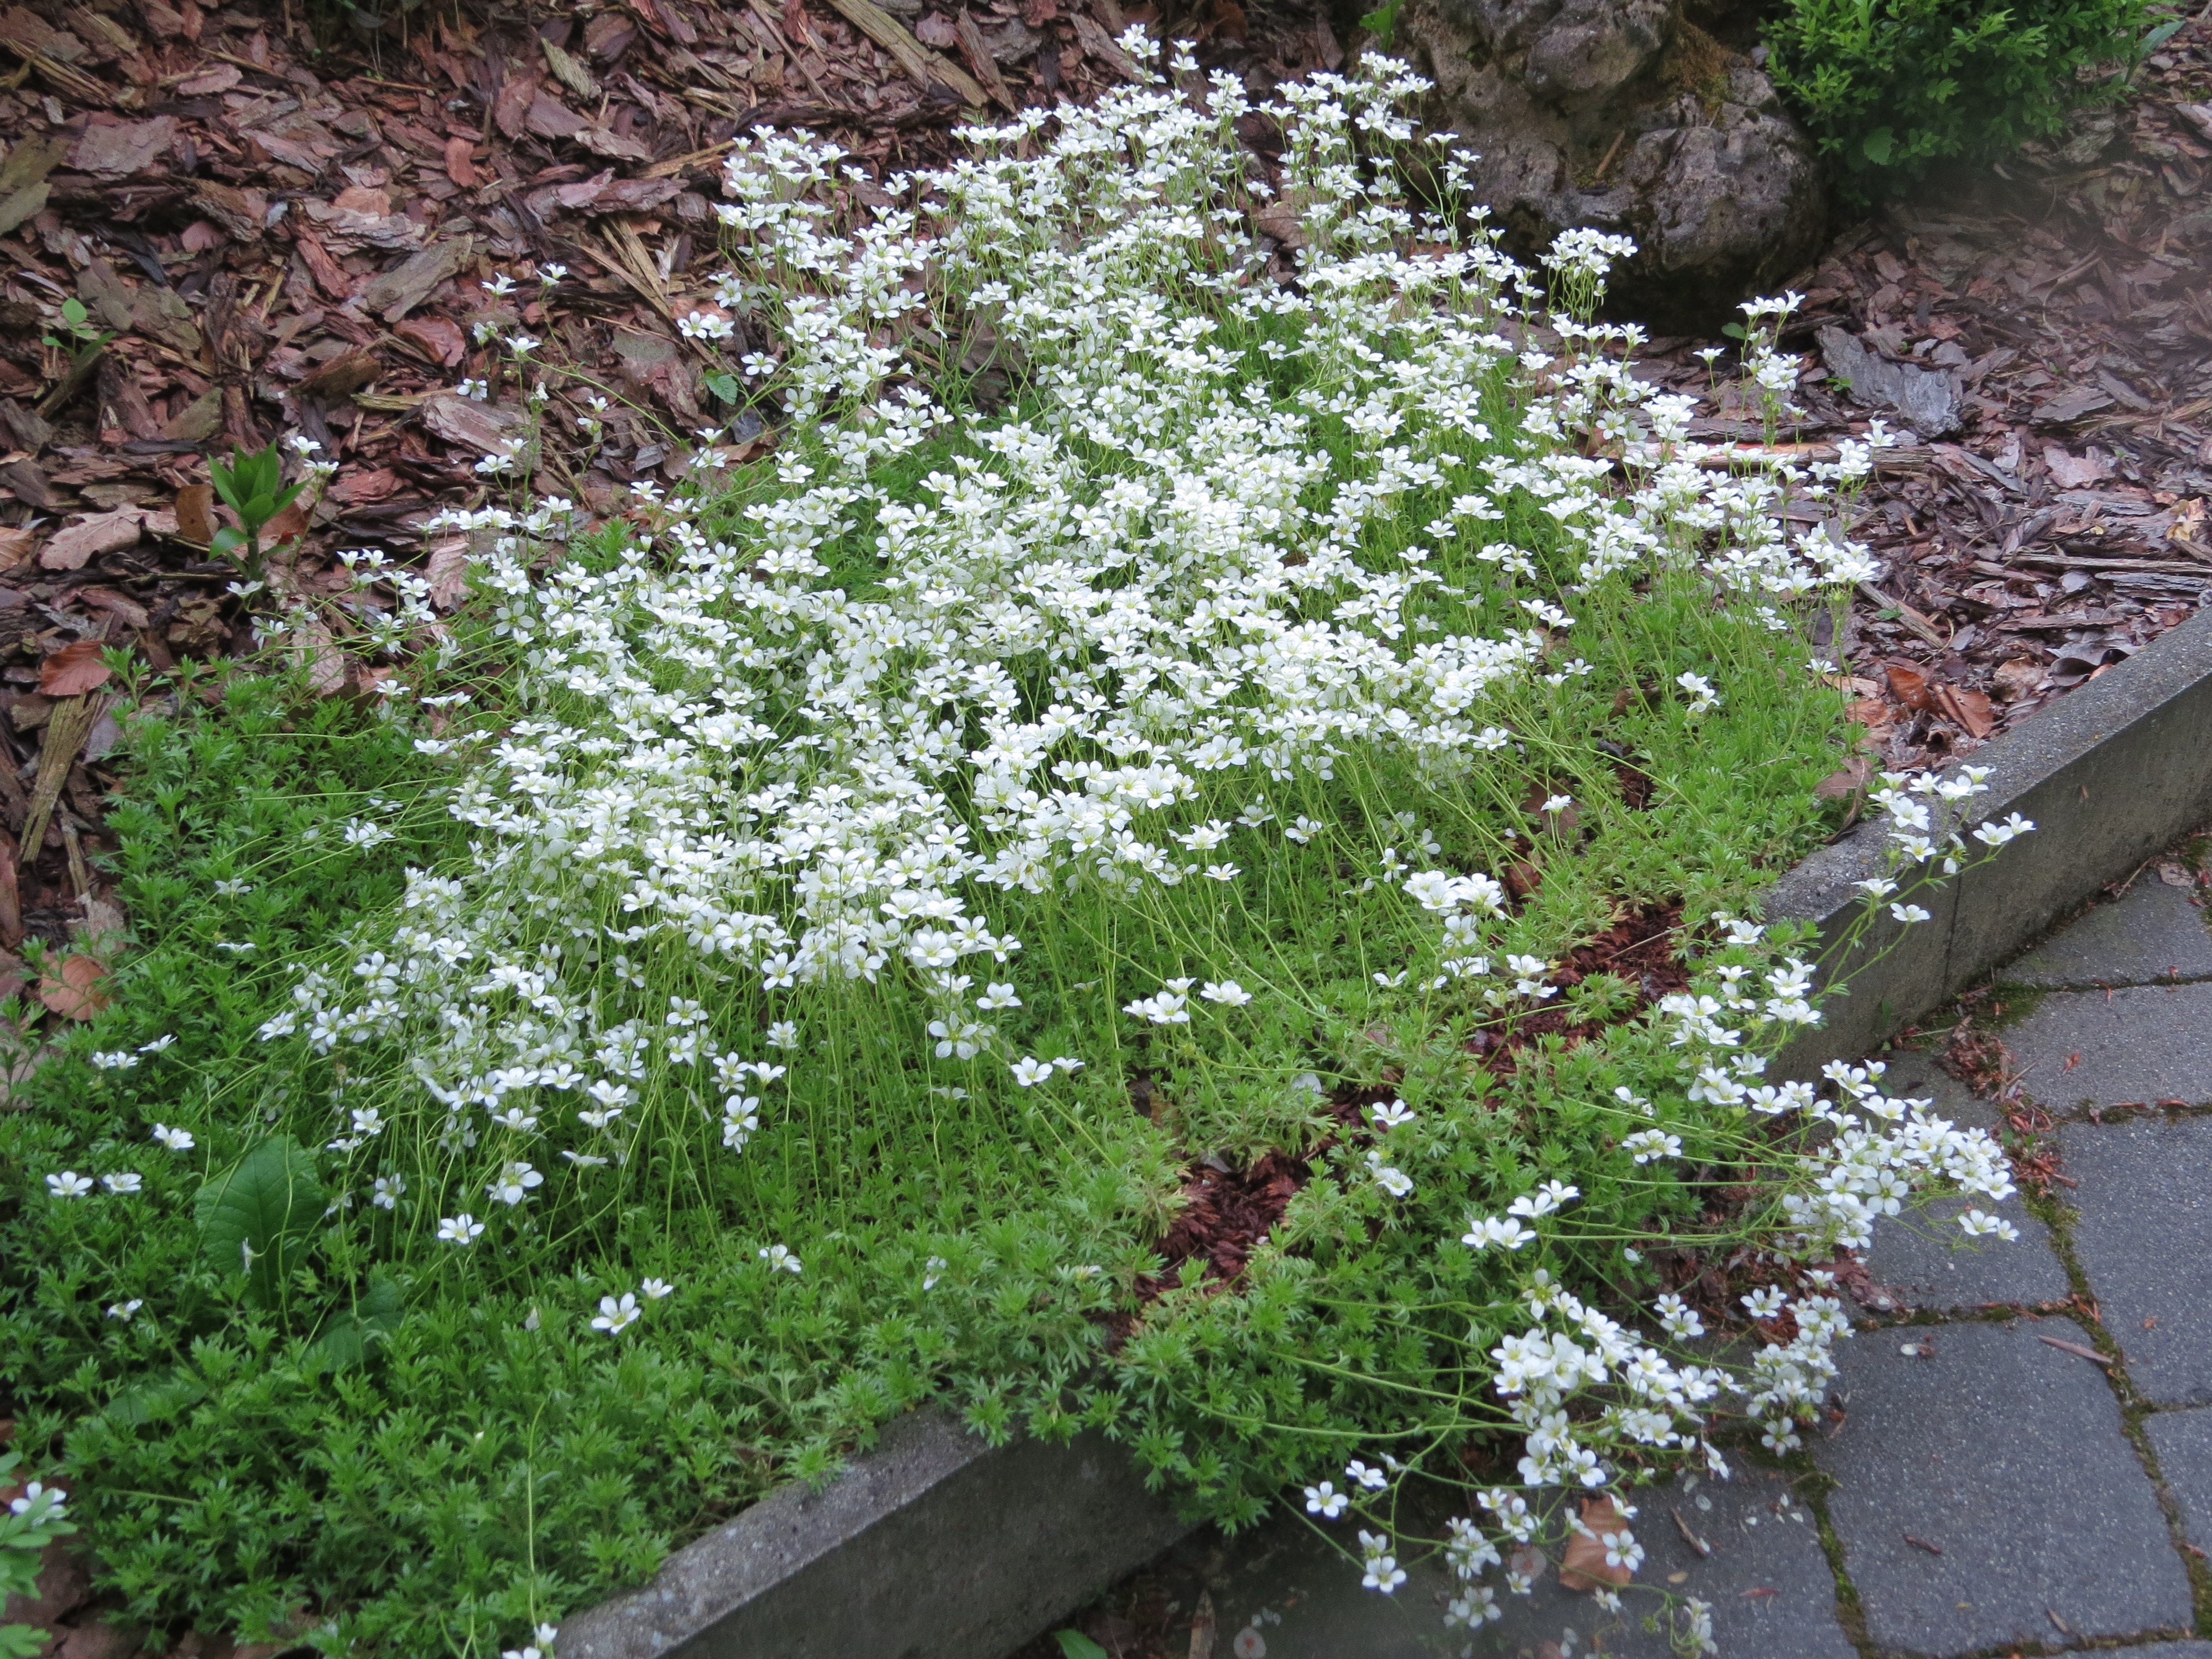 2018-05-13 (113) Saxifraga x arendsii (mossy saxifrage) at Bichlhäusl in Frankenfels, Austria